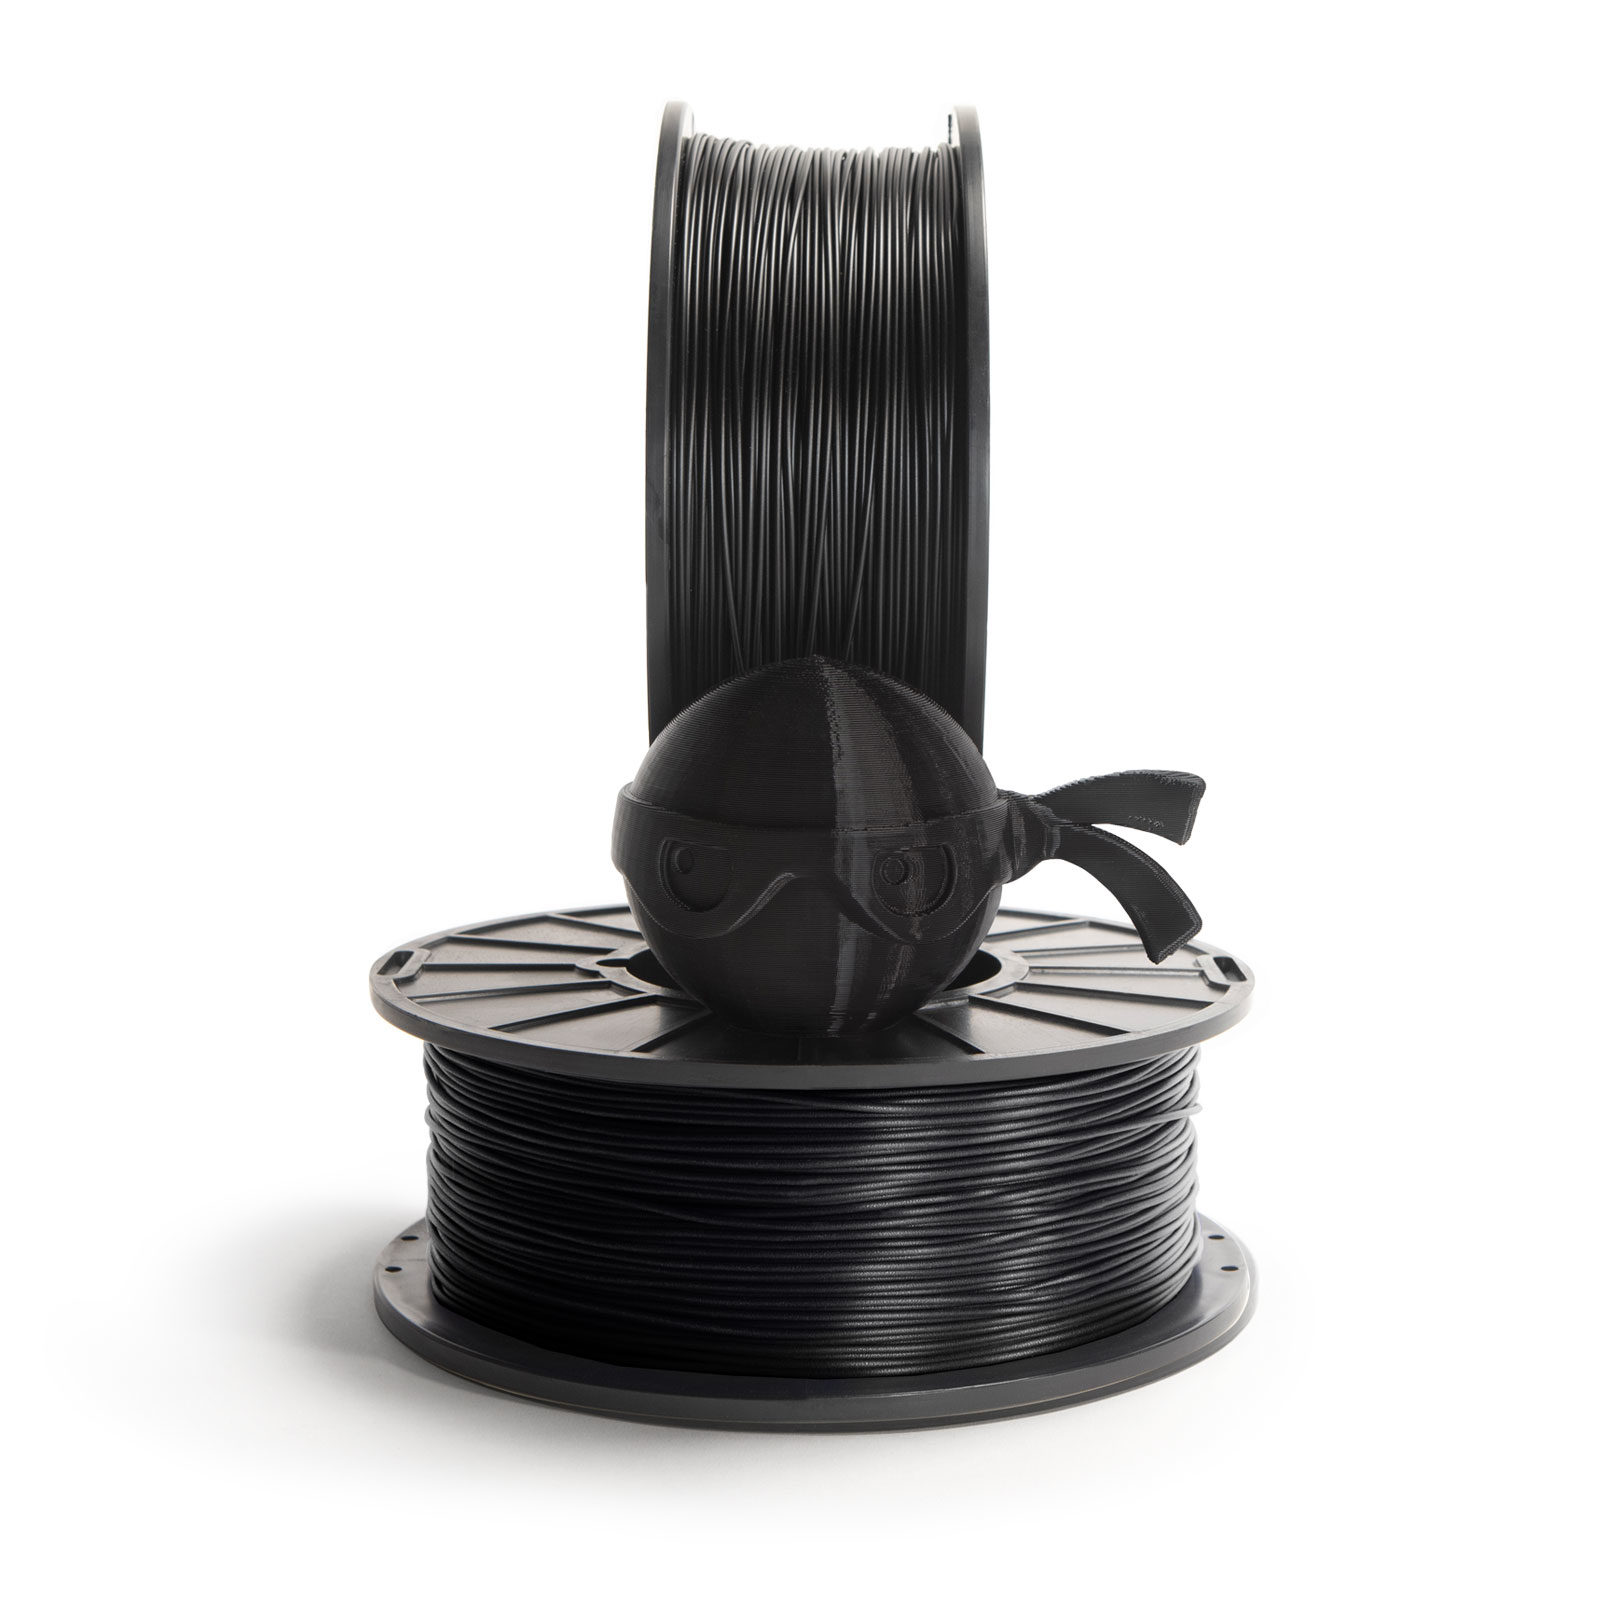 Armadillo Midnight Black 75D Rigid TPU 3D printing filament 1.75mm 500gms